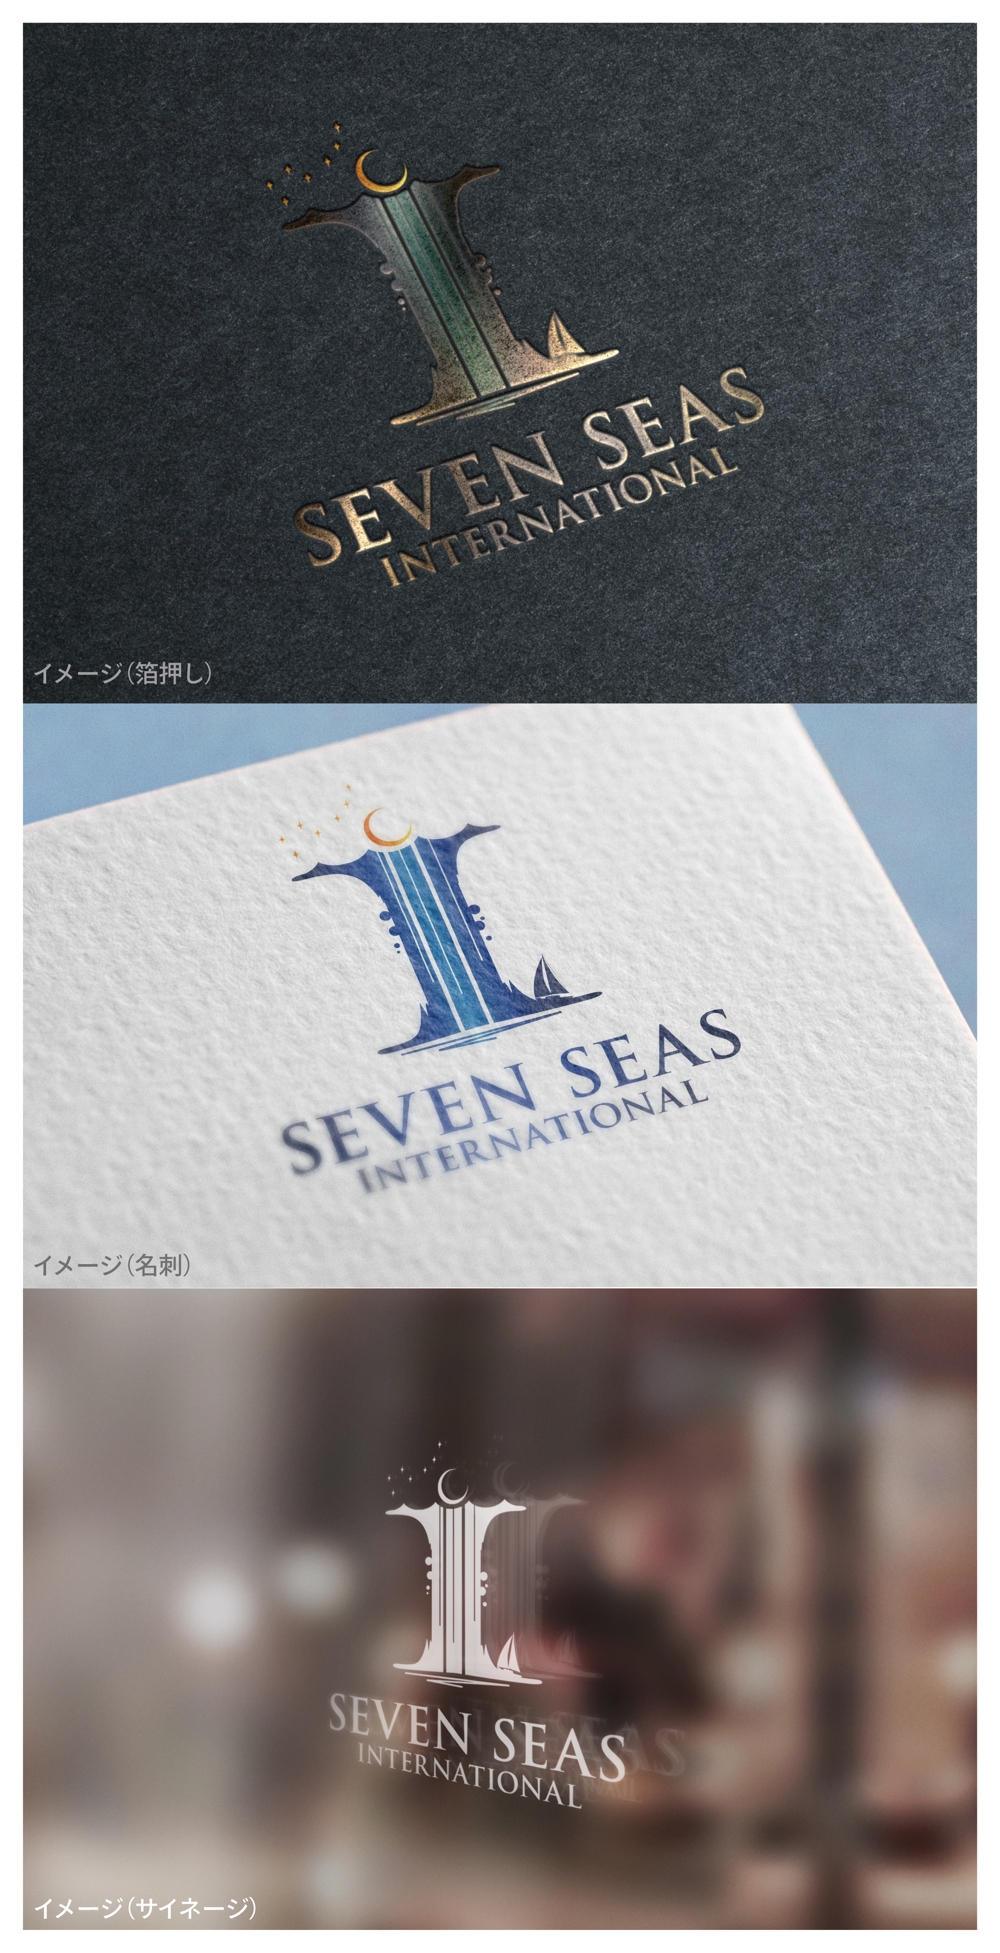 SEVEN SEAS INTERNATIONAL_logo01_01.jpg